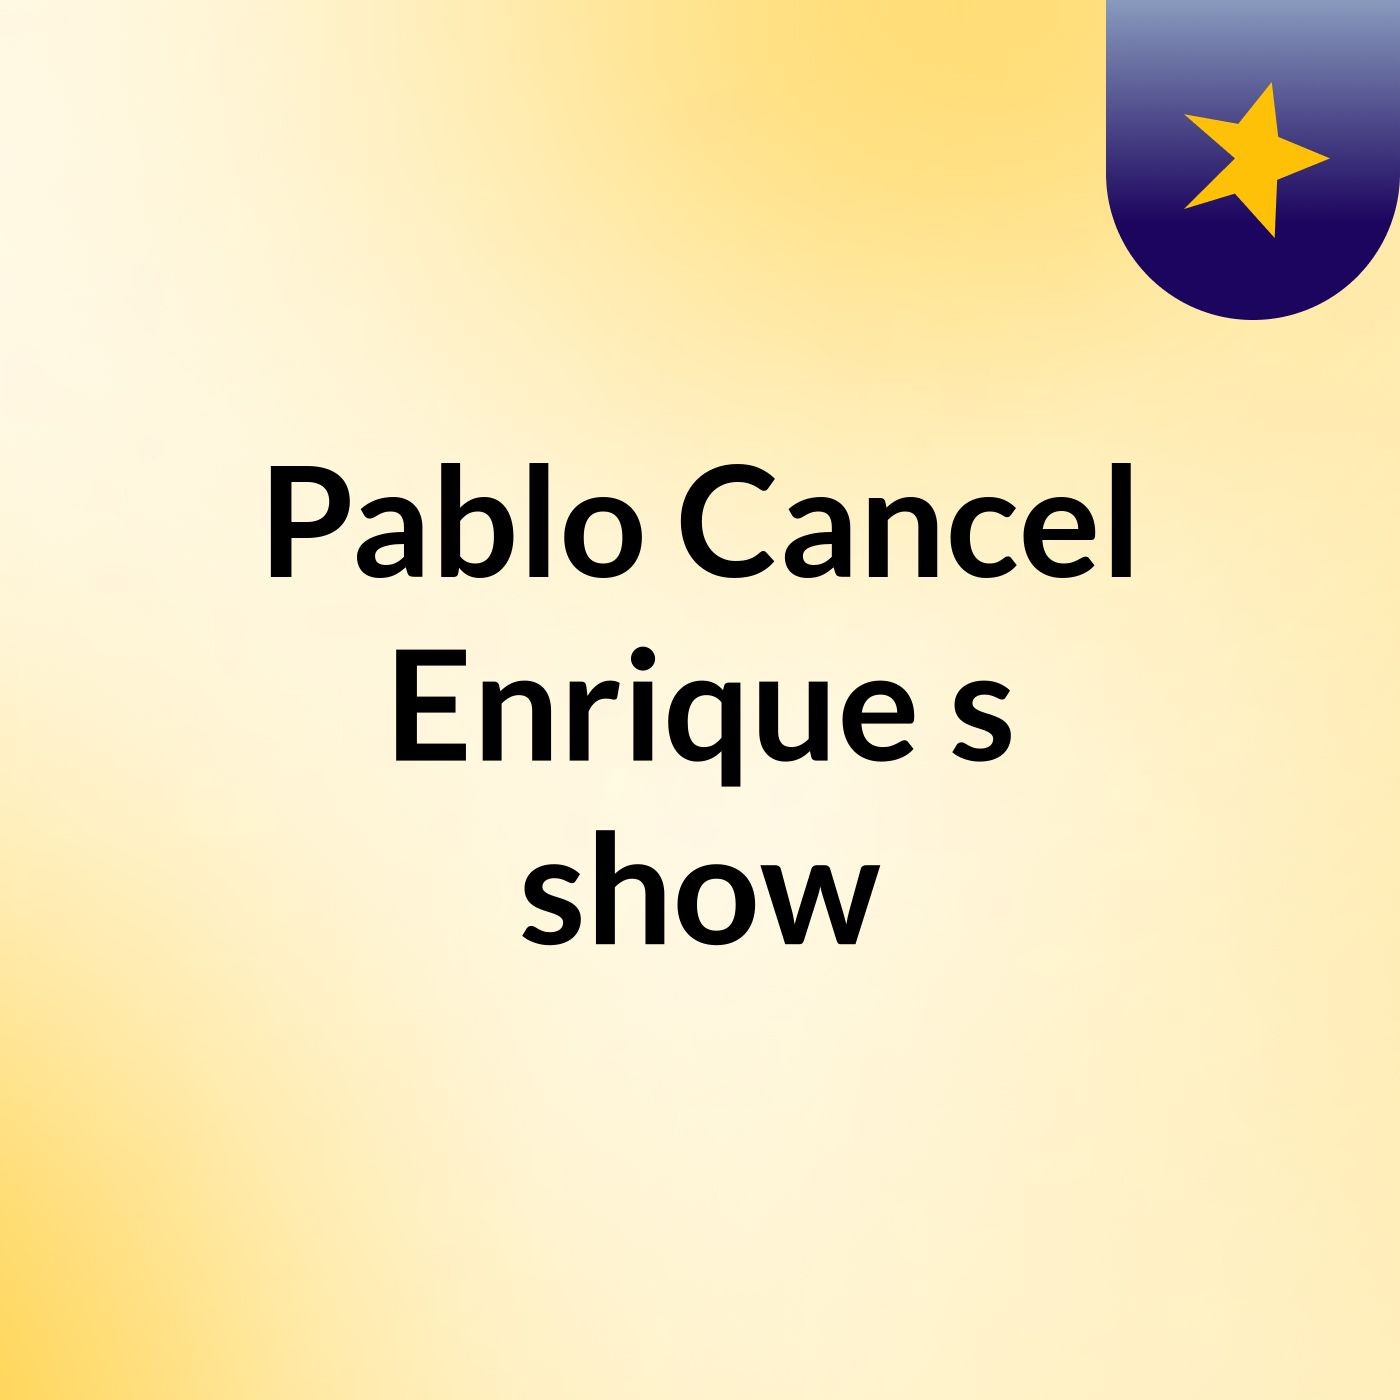 Pablo Cancel Enrique's show